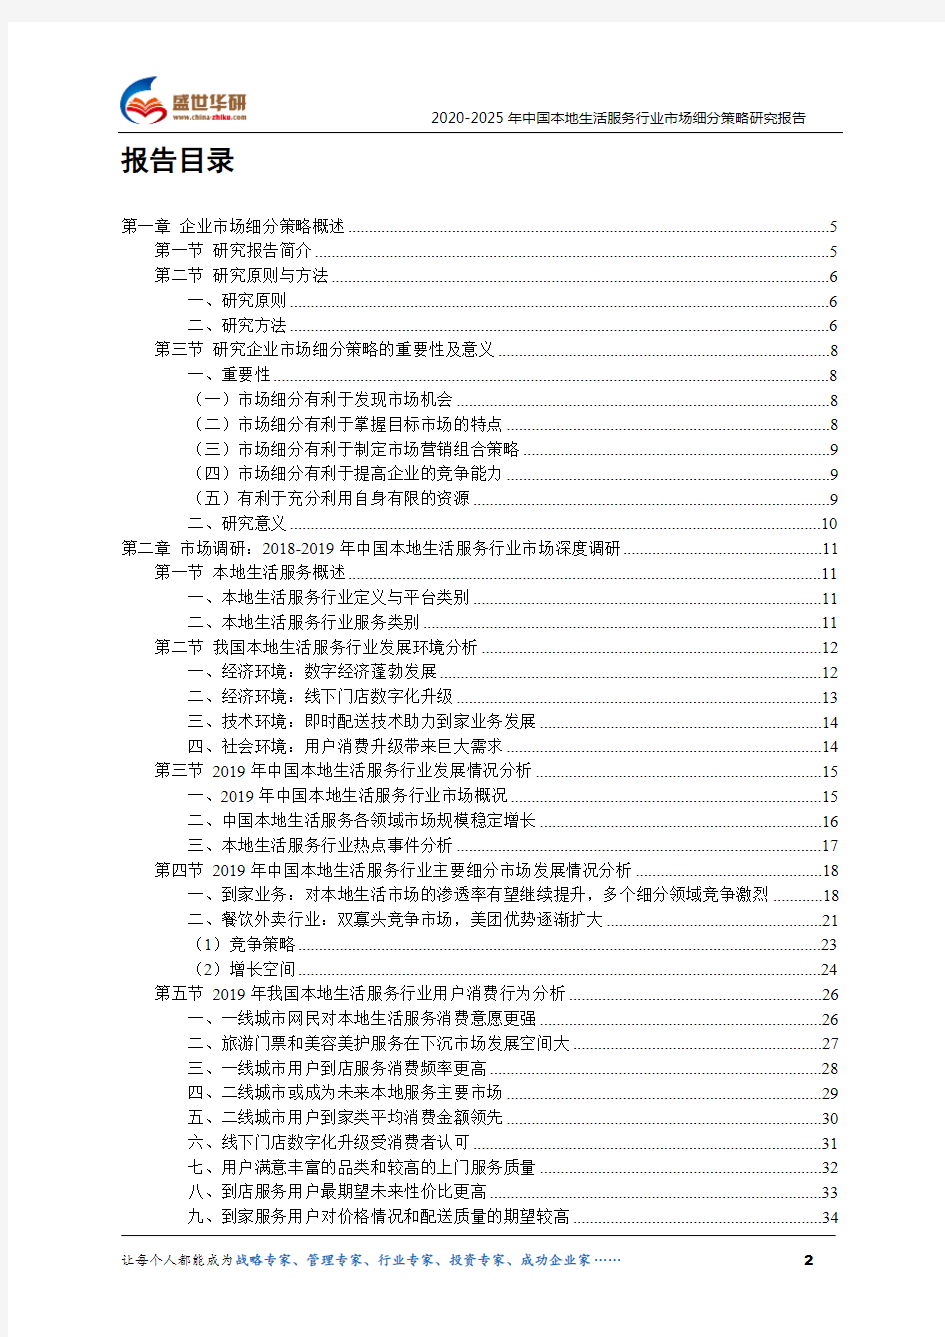 【完整版】2020-2025年中国本地生活服务行业市场细分策略研究报告